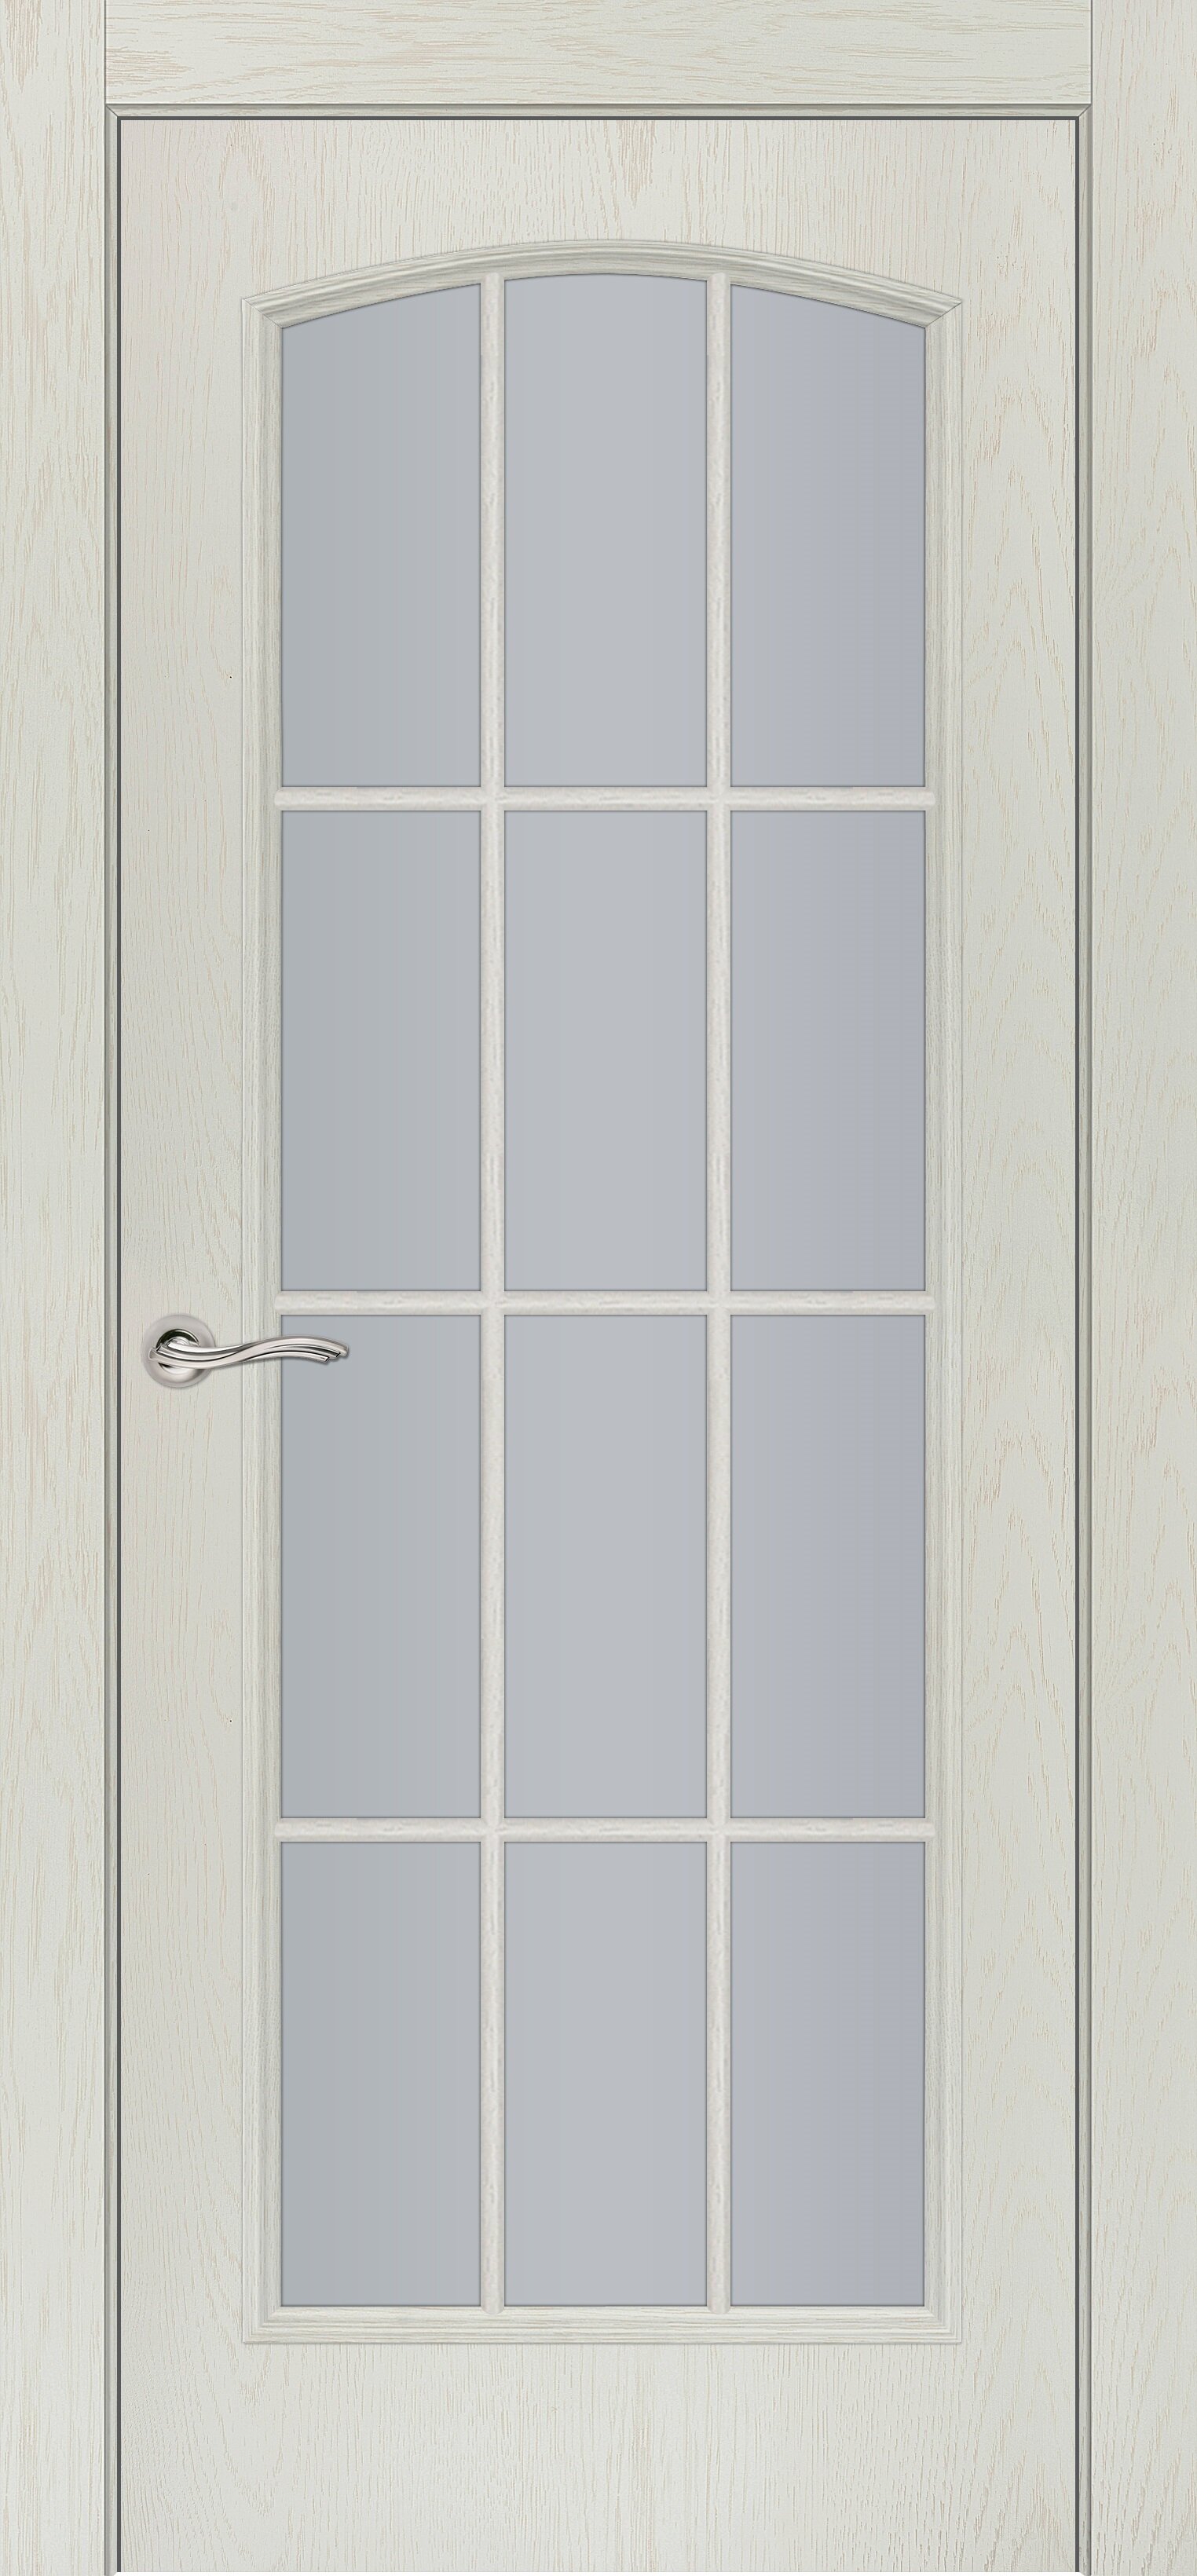 Дверь Фрамир CLASSIC VESTA 4/2 Цвет:Лён Остекление:Прозрачное